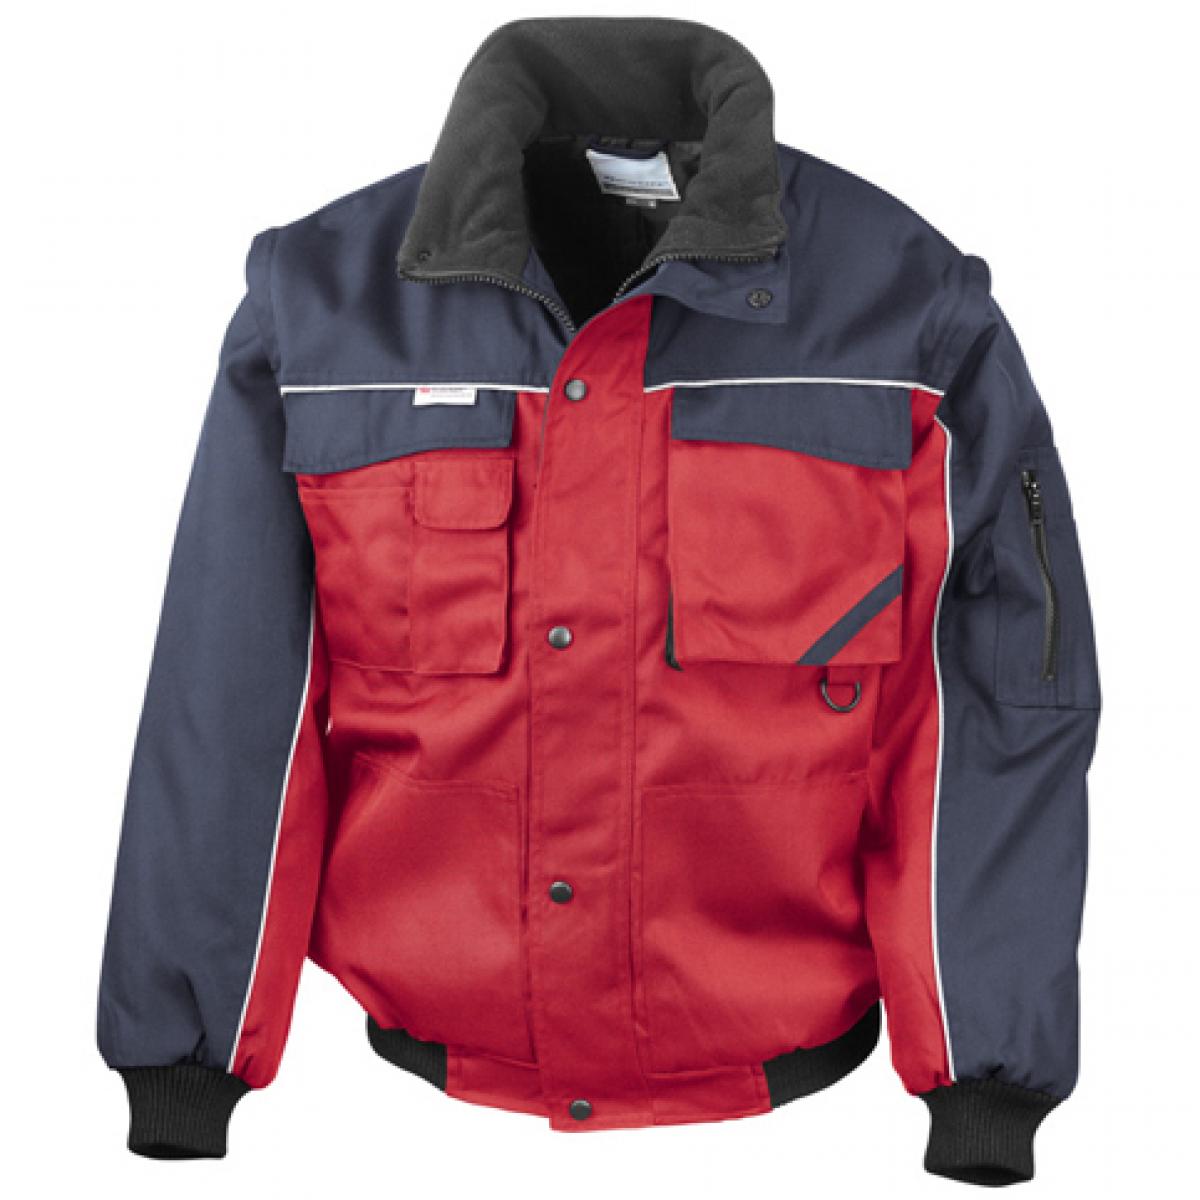 Hersteller: Result WORK-GUARD Herstellernummer: R71X Artikelbezeichnung: Workguard Heavy Duty Jacket / Arbeitsjacke Farbe: Red/Navy